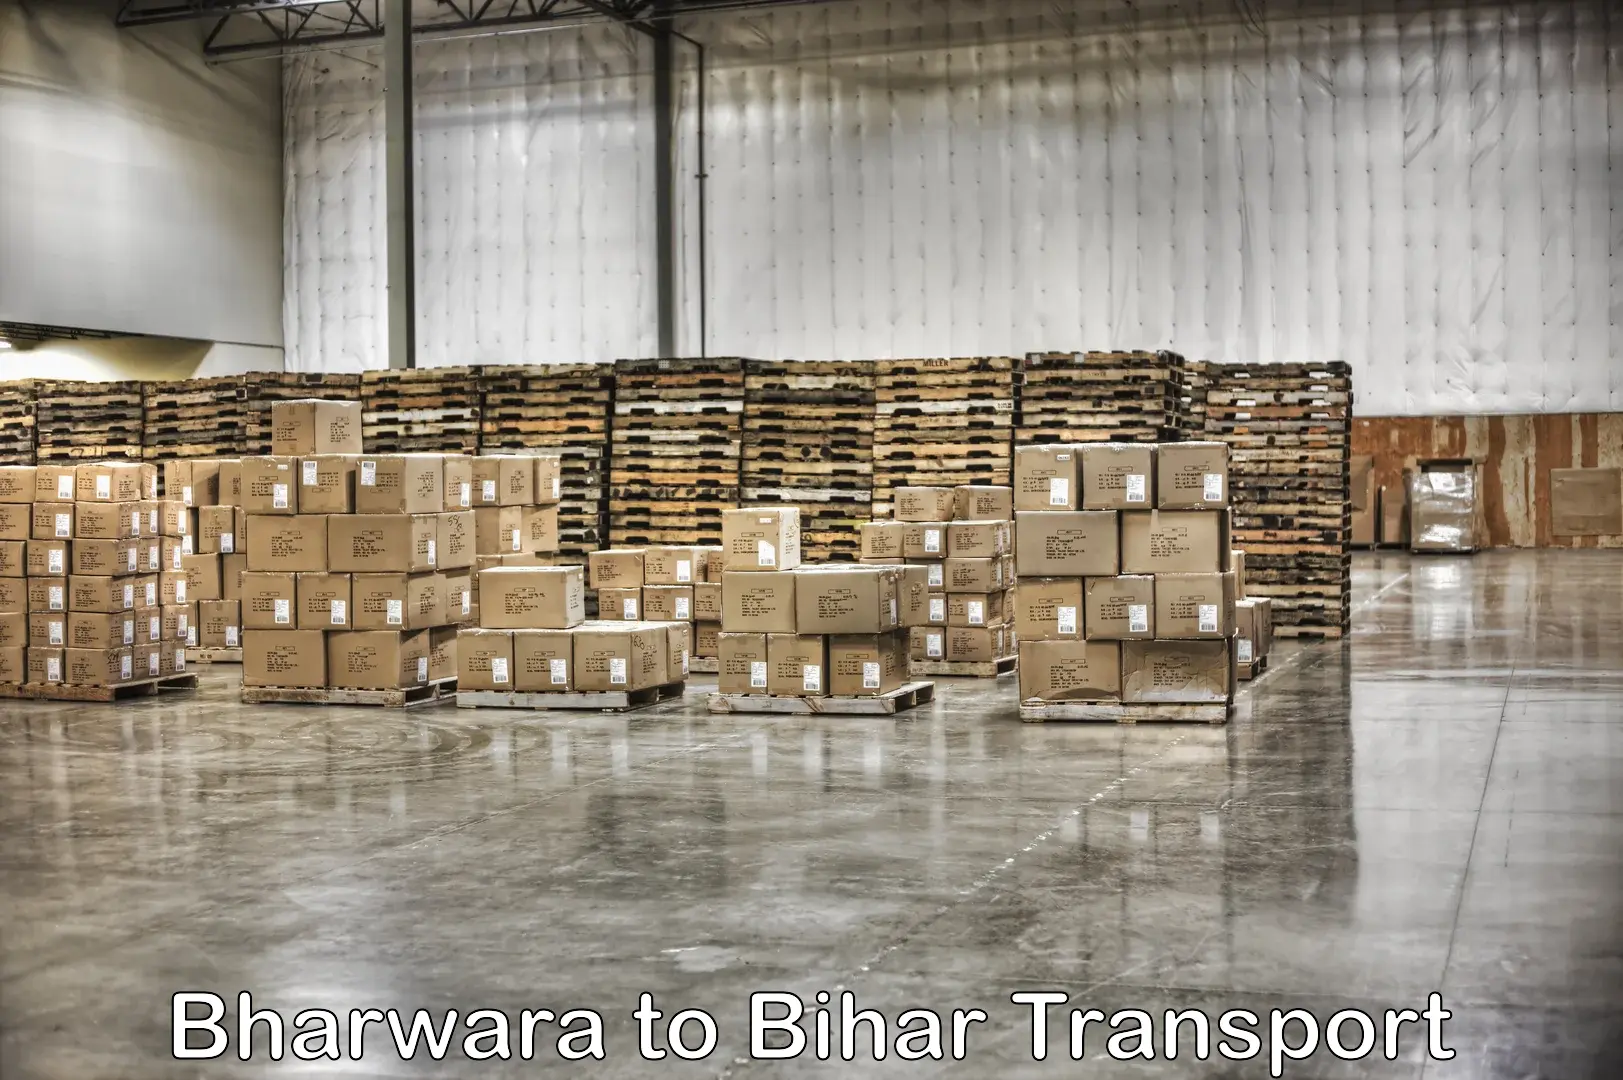 Nearest transport service Bharwara to Bhorey